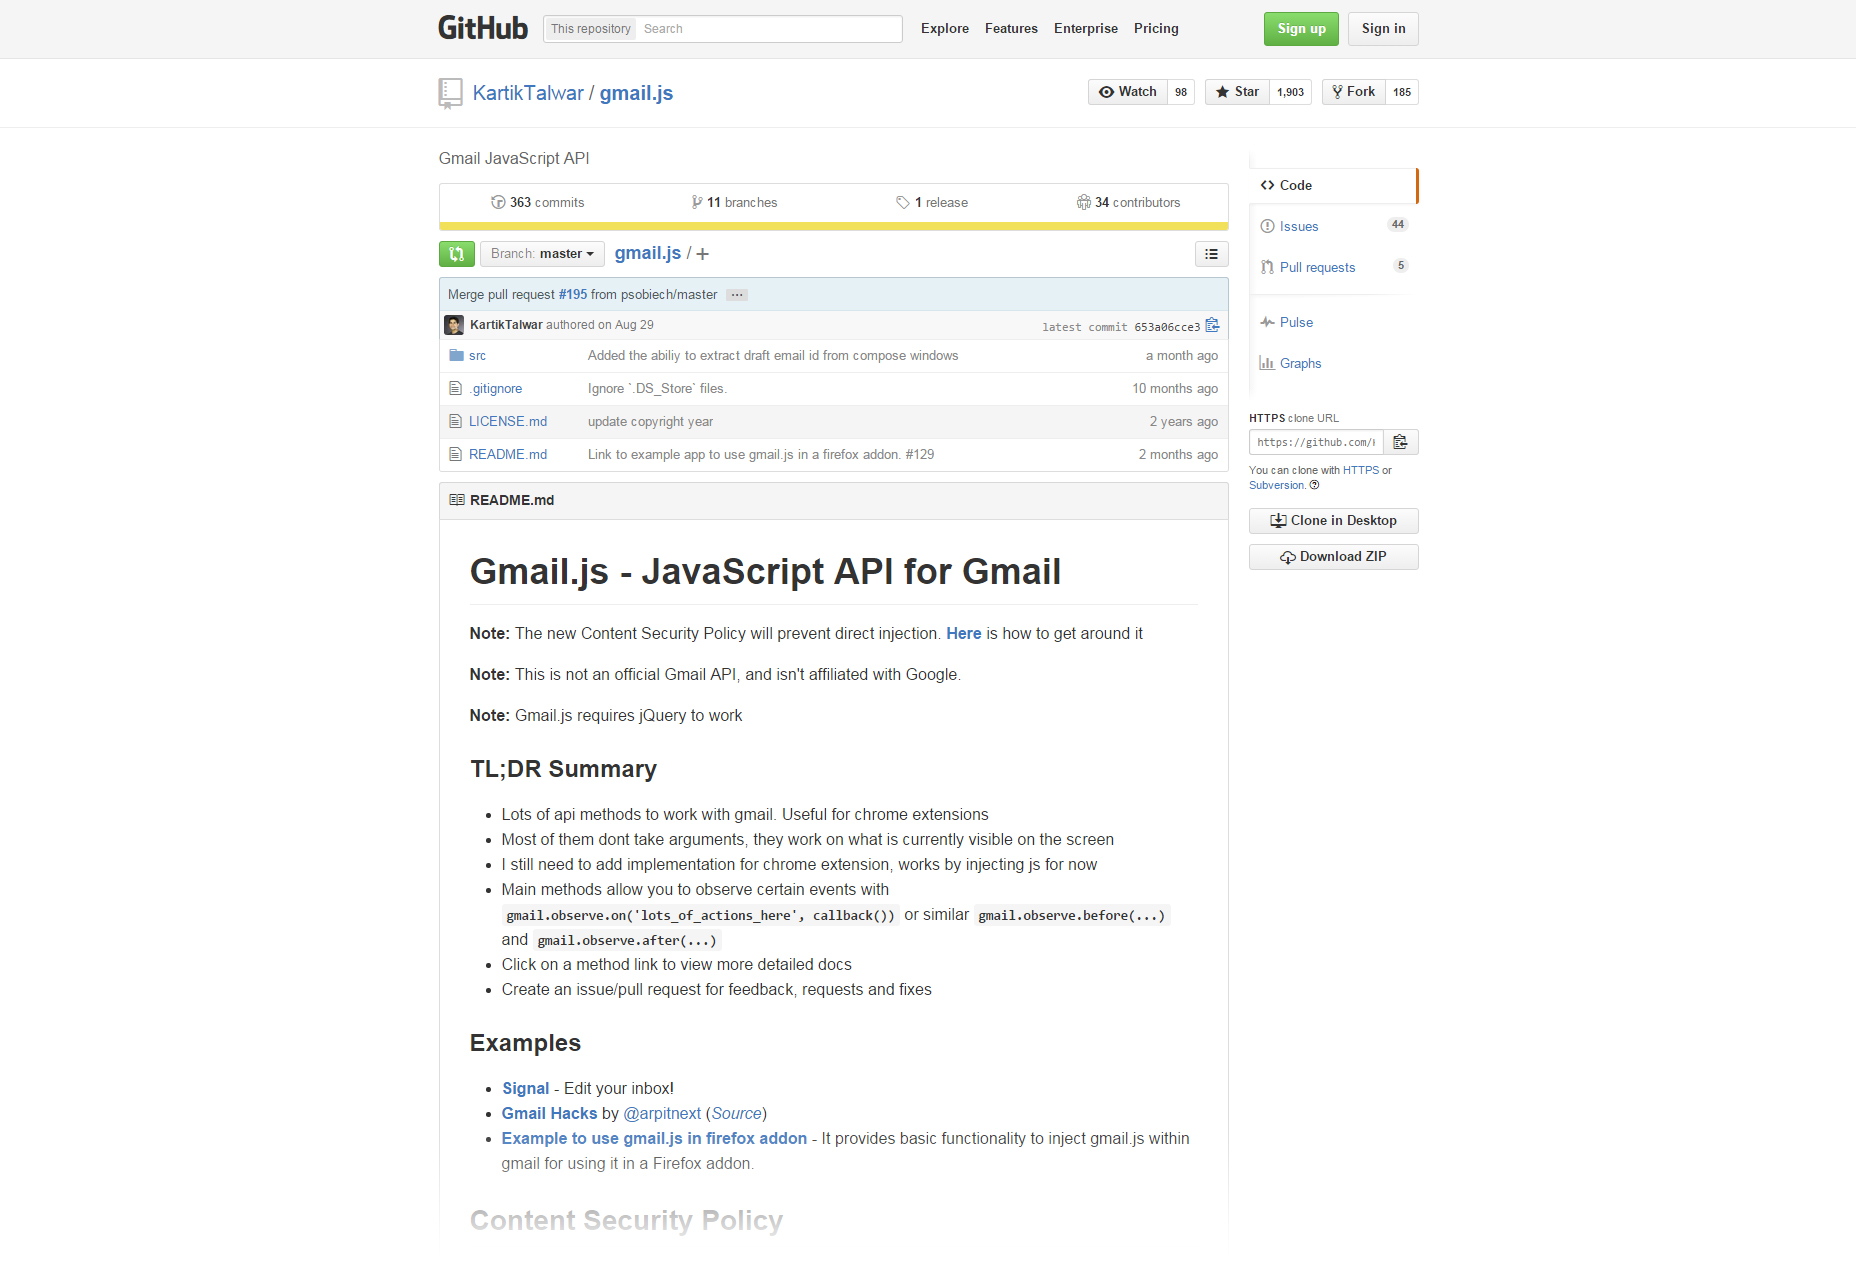 Gmail.js: API de JavaScript para la administración de Gmail